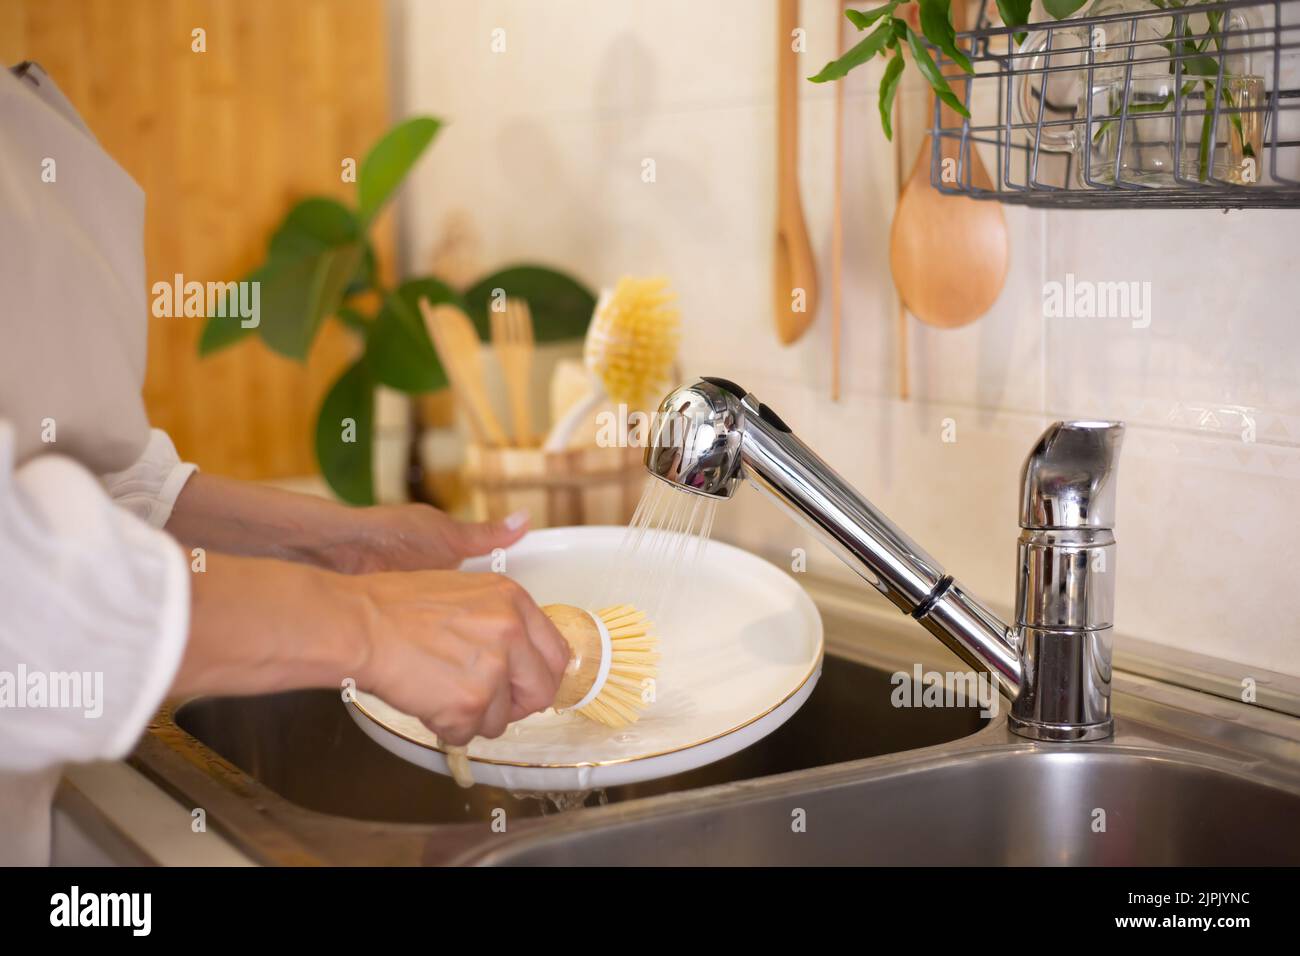 Concept zéro déchet. Accessoires de cuisine écologiques. Brosses, savon naturel, Une femme lave la vaisselle avec des produits naturels et une brosse. ECO sans déchets Banque D'Images